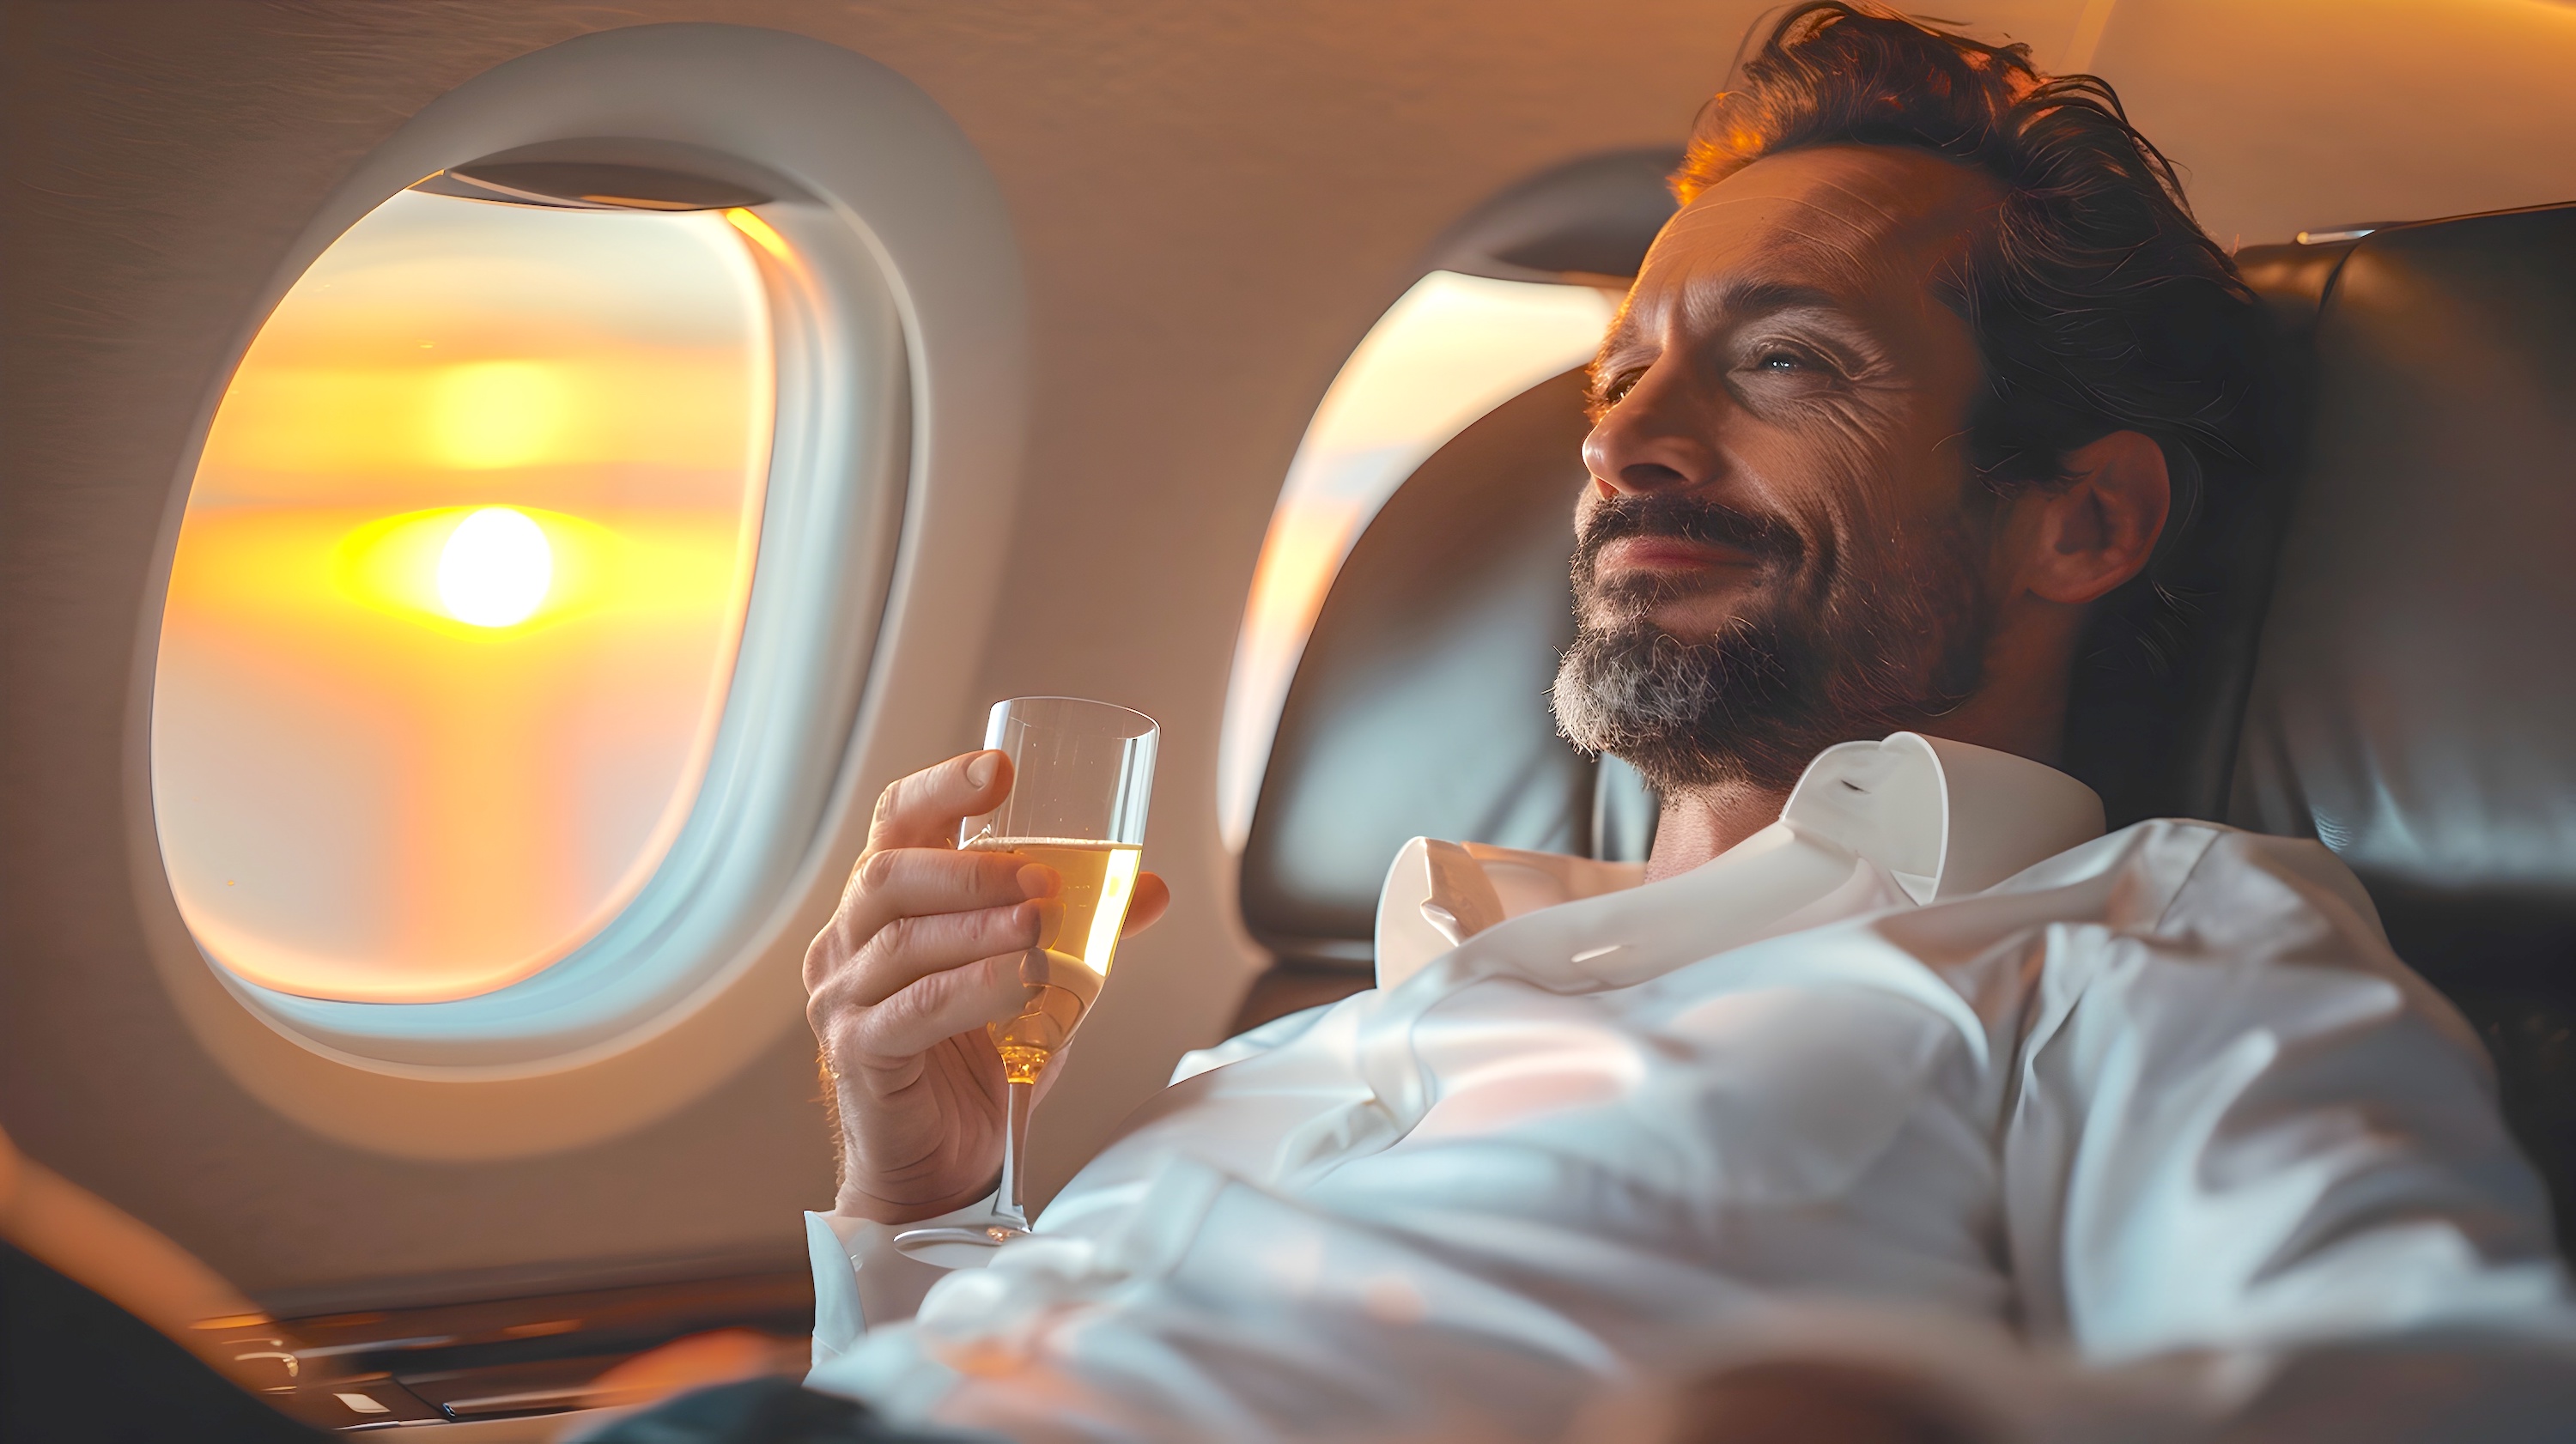 Boire de l'alcool en avion, et profiter d'une sieste, serait néfaste pour la santé, d'après une nouvelle étude. © kiatipol, Adobe Stock